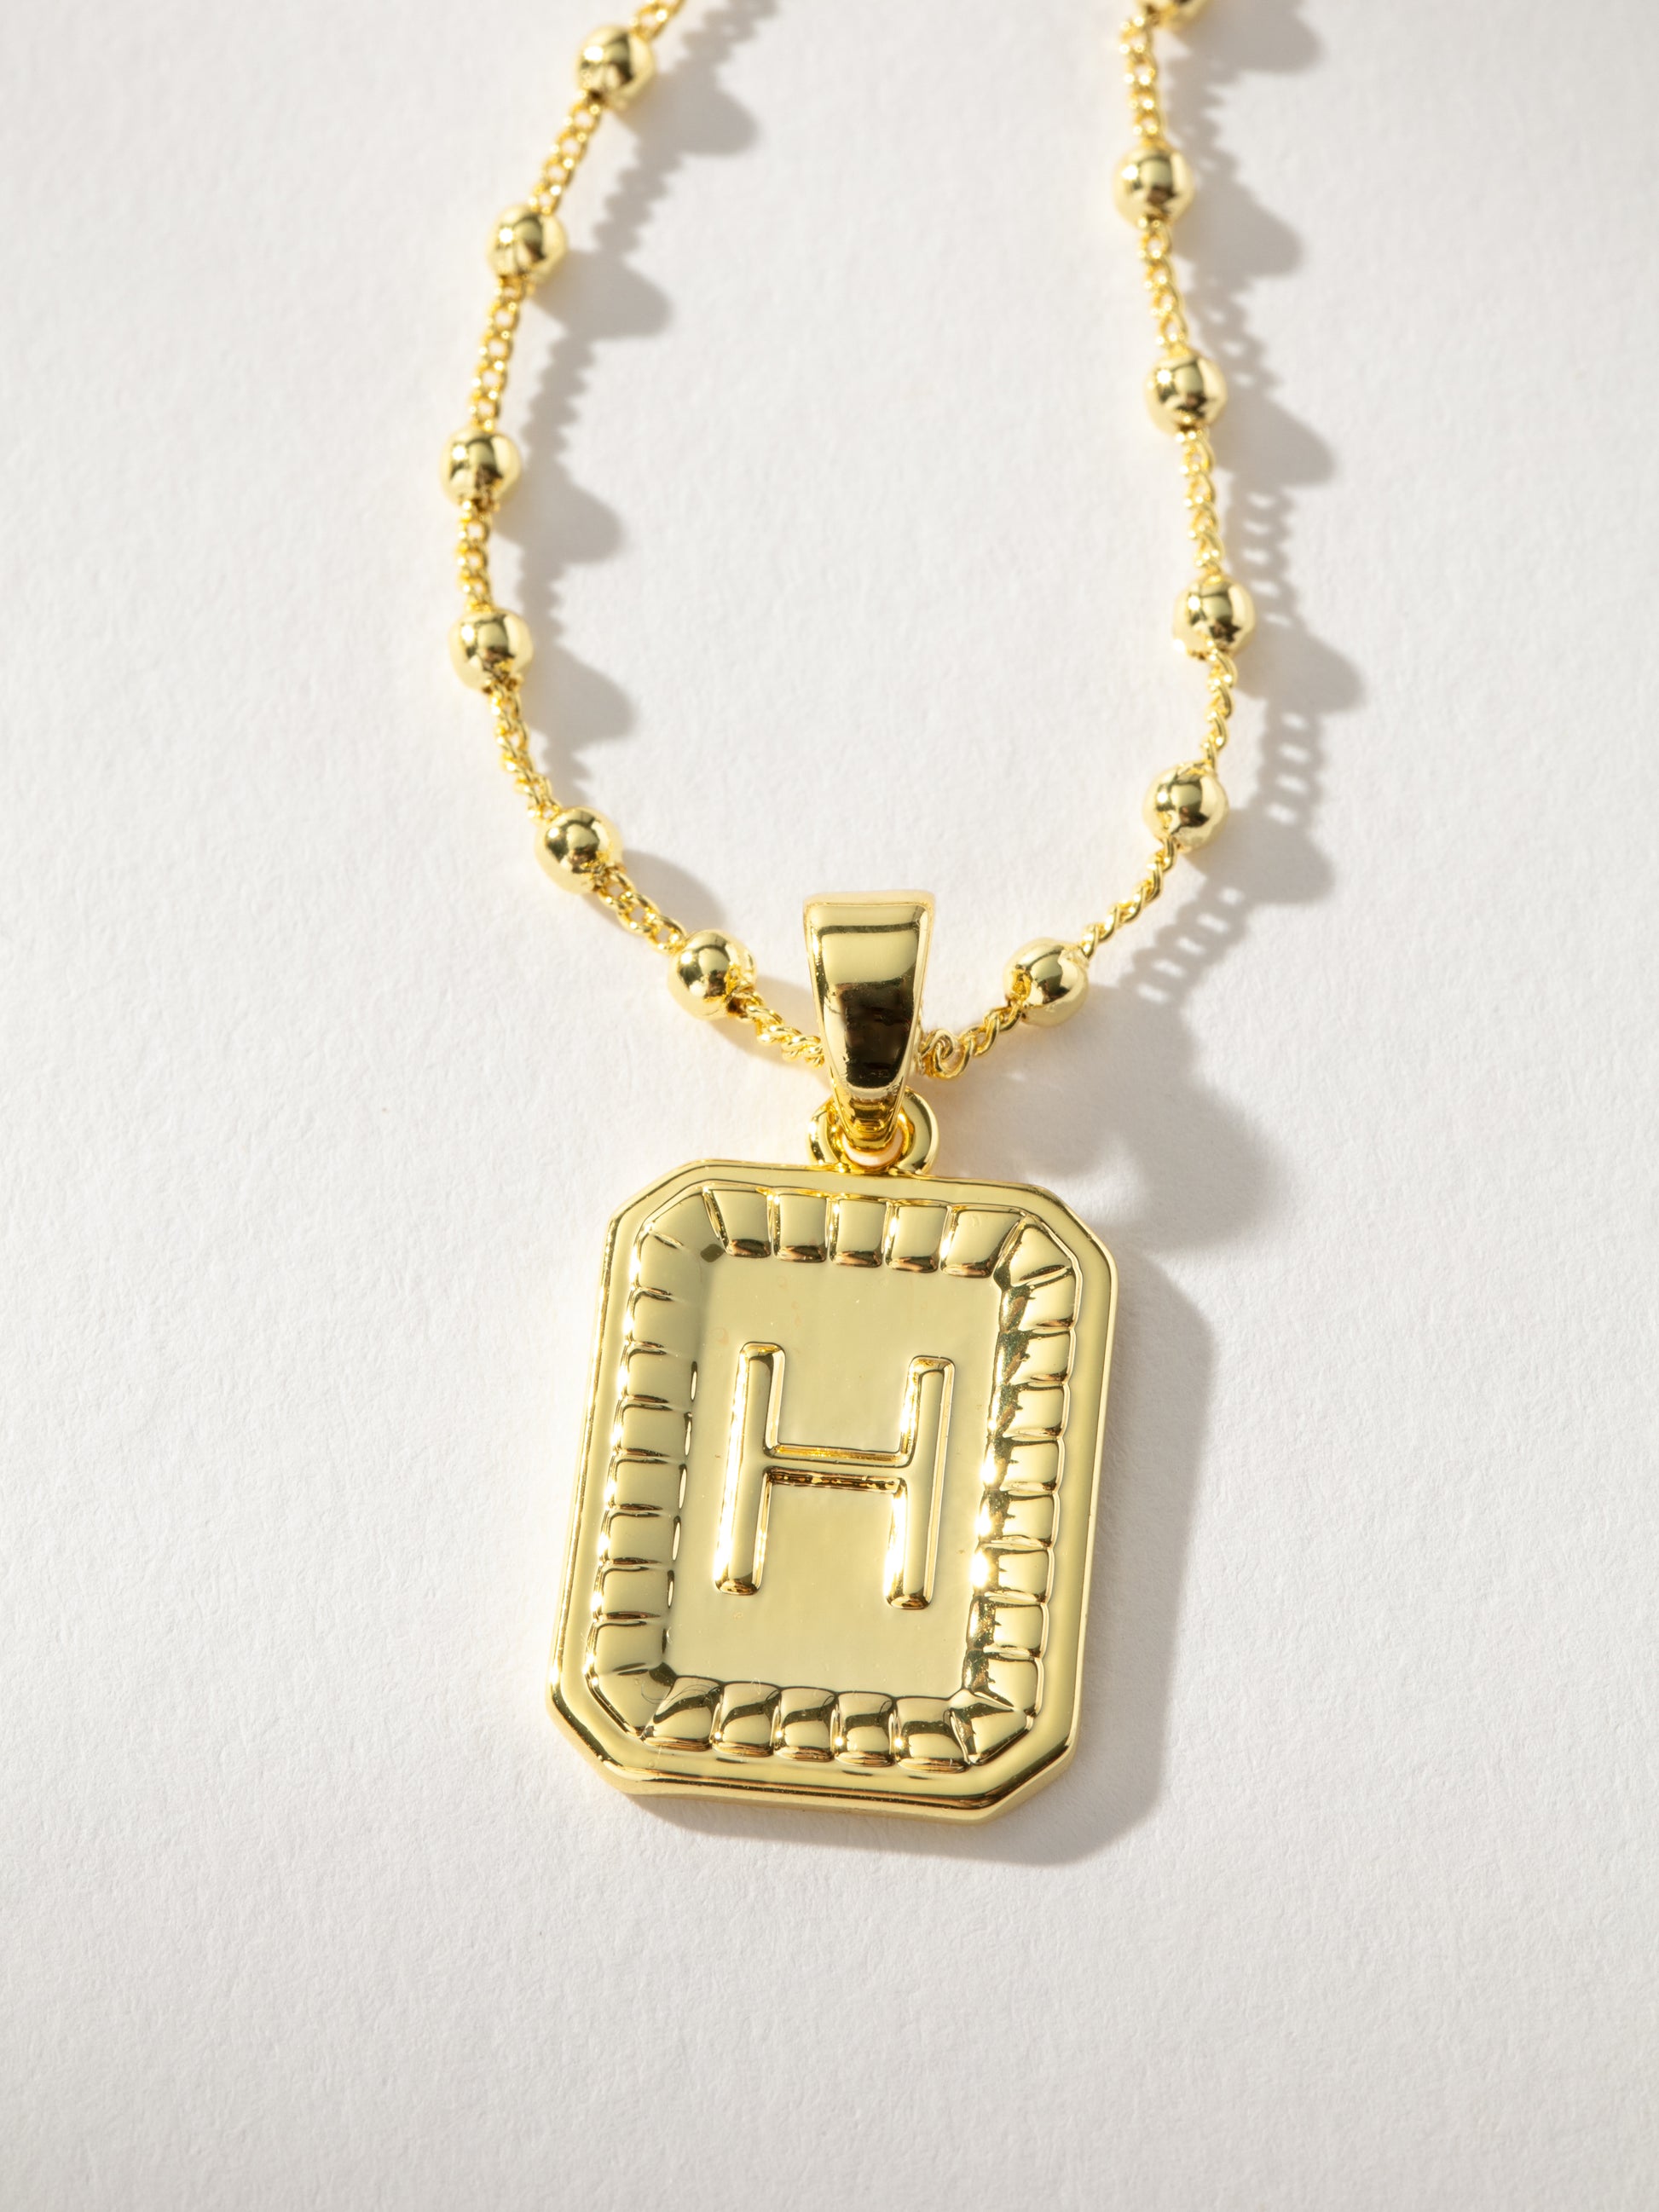 Sur Necklace | Gold H | Product Image | Uncommon James